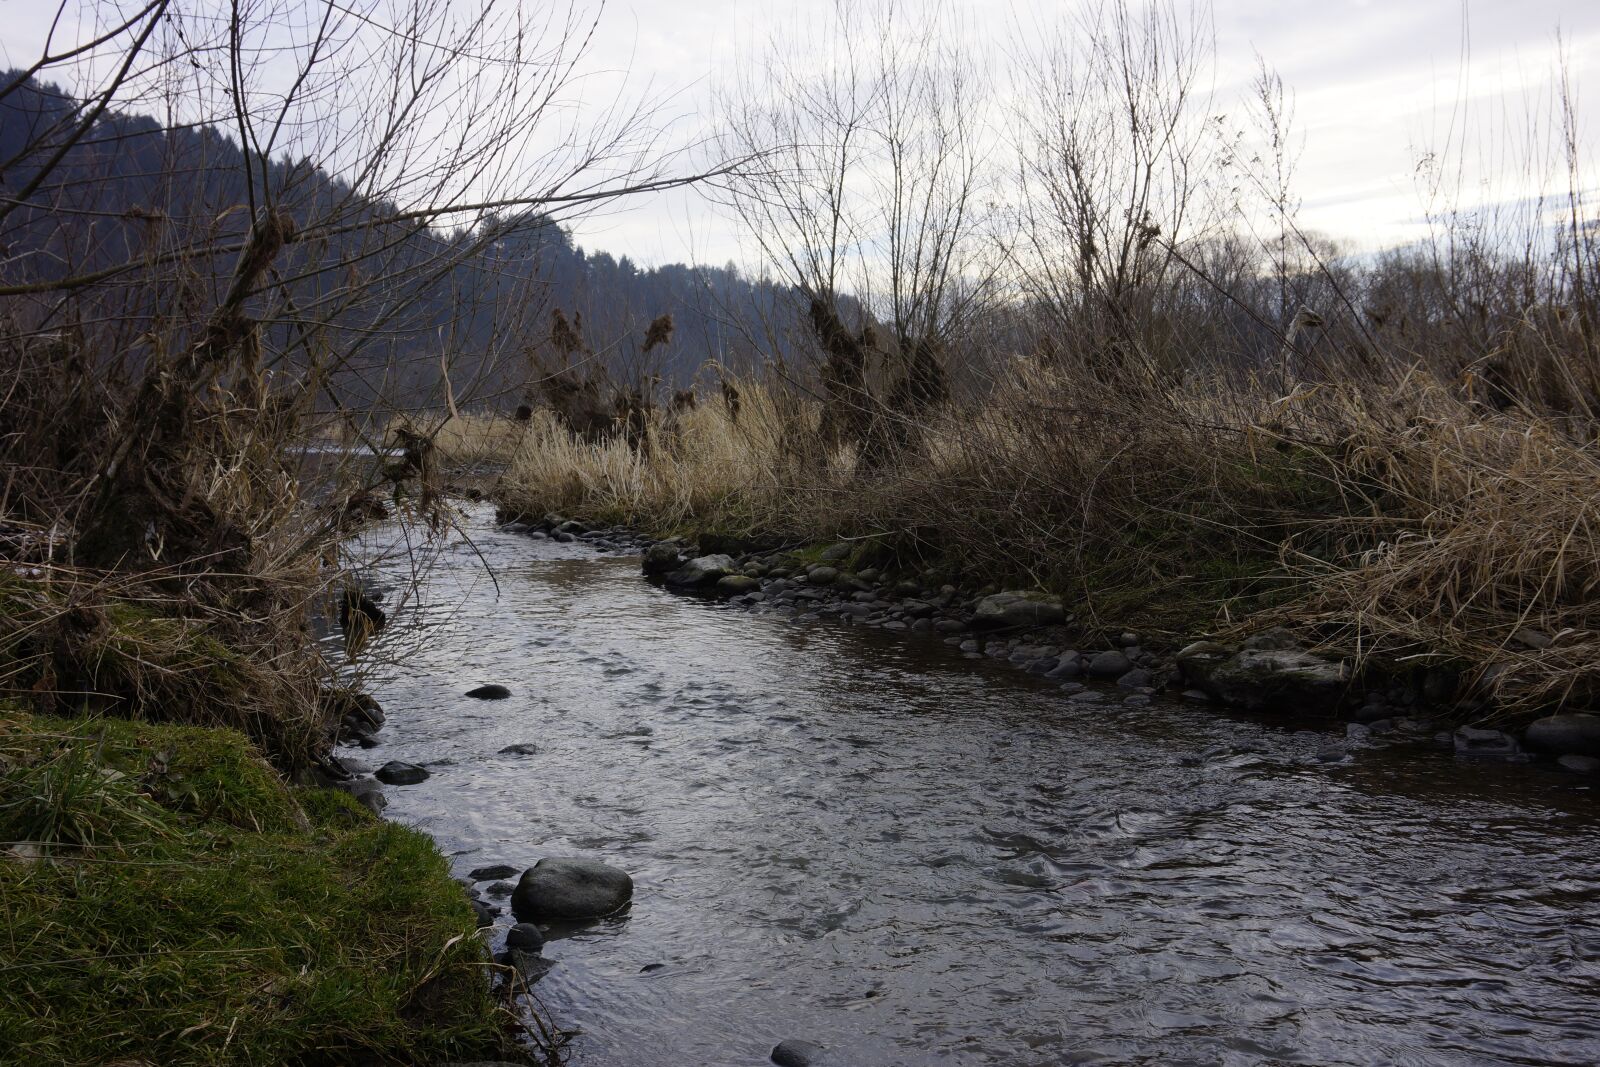 Sony E 16-50mm F3.5-5.6 PZ OSS sample photo. River, nature, pieniny photography